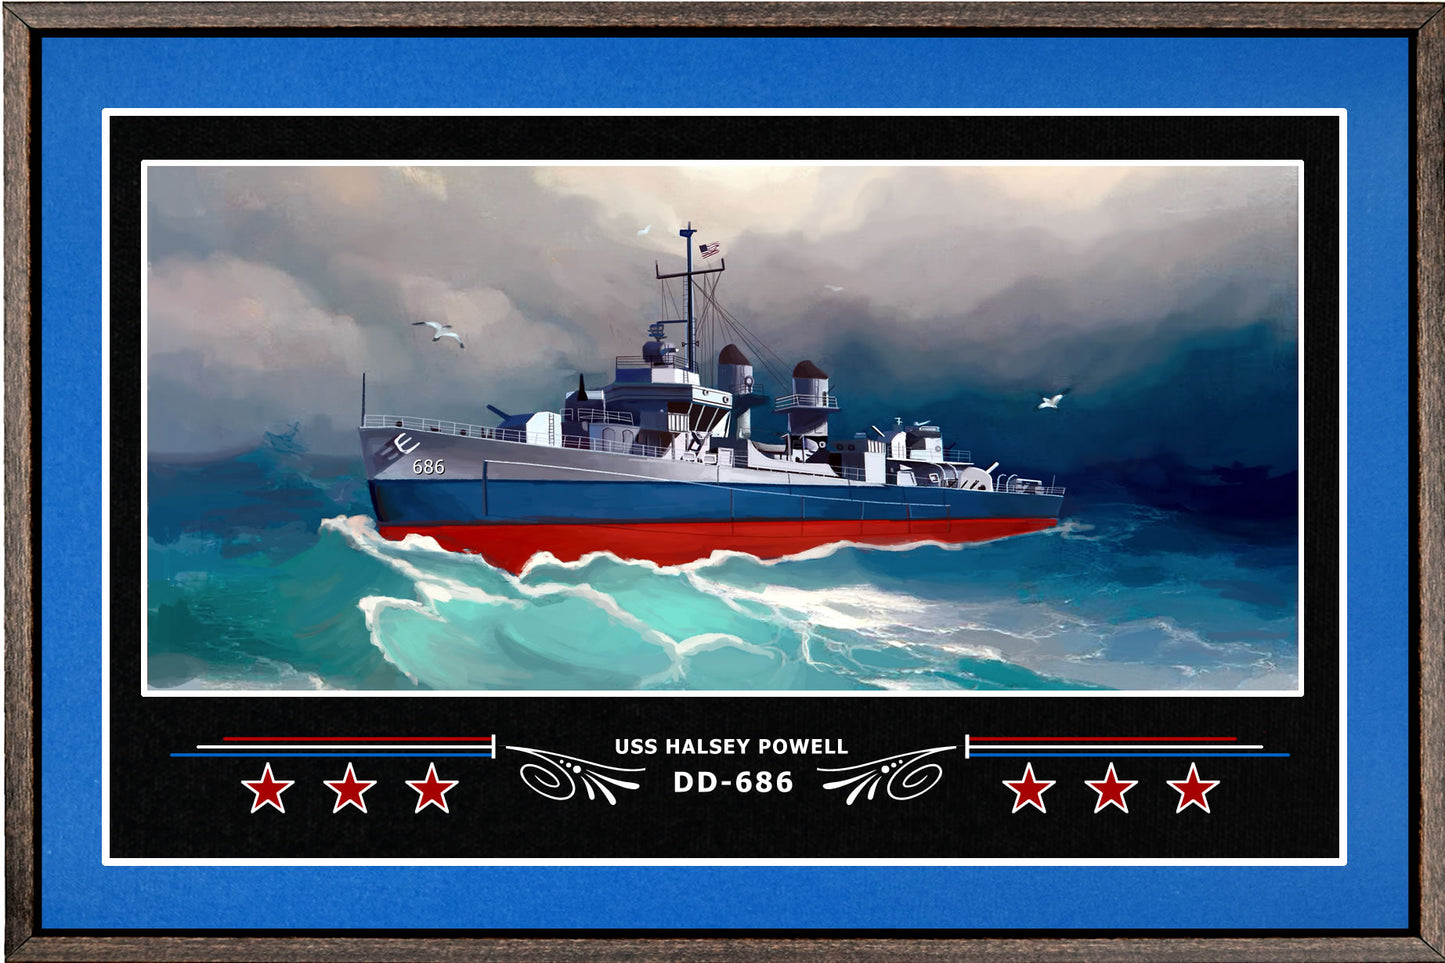 USS HALSEY POWELL DD 686 BOX FRAMED CANVAS ART BLUE